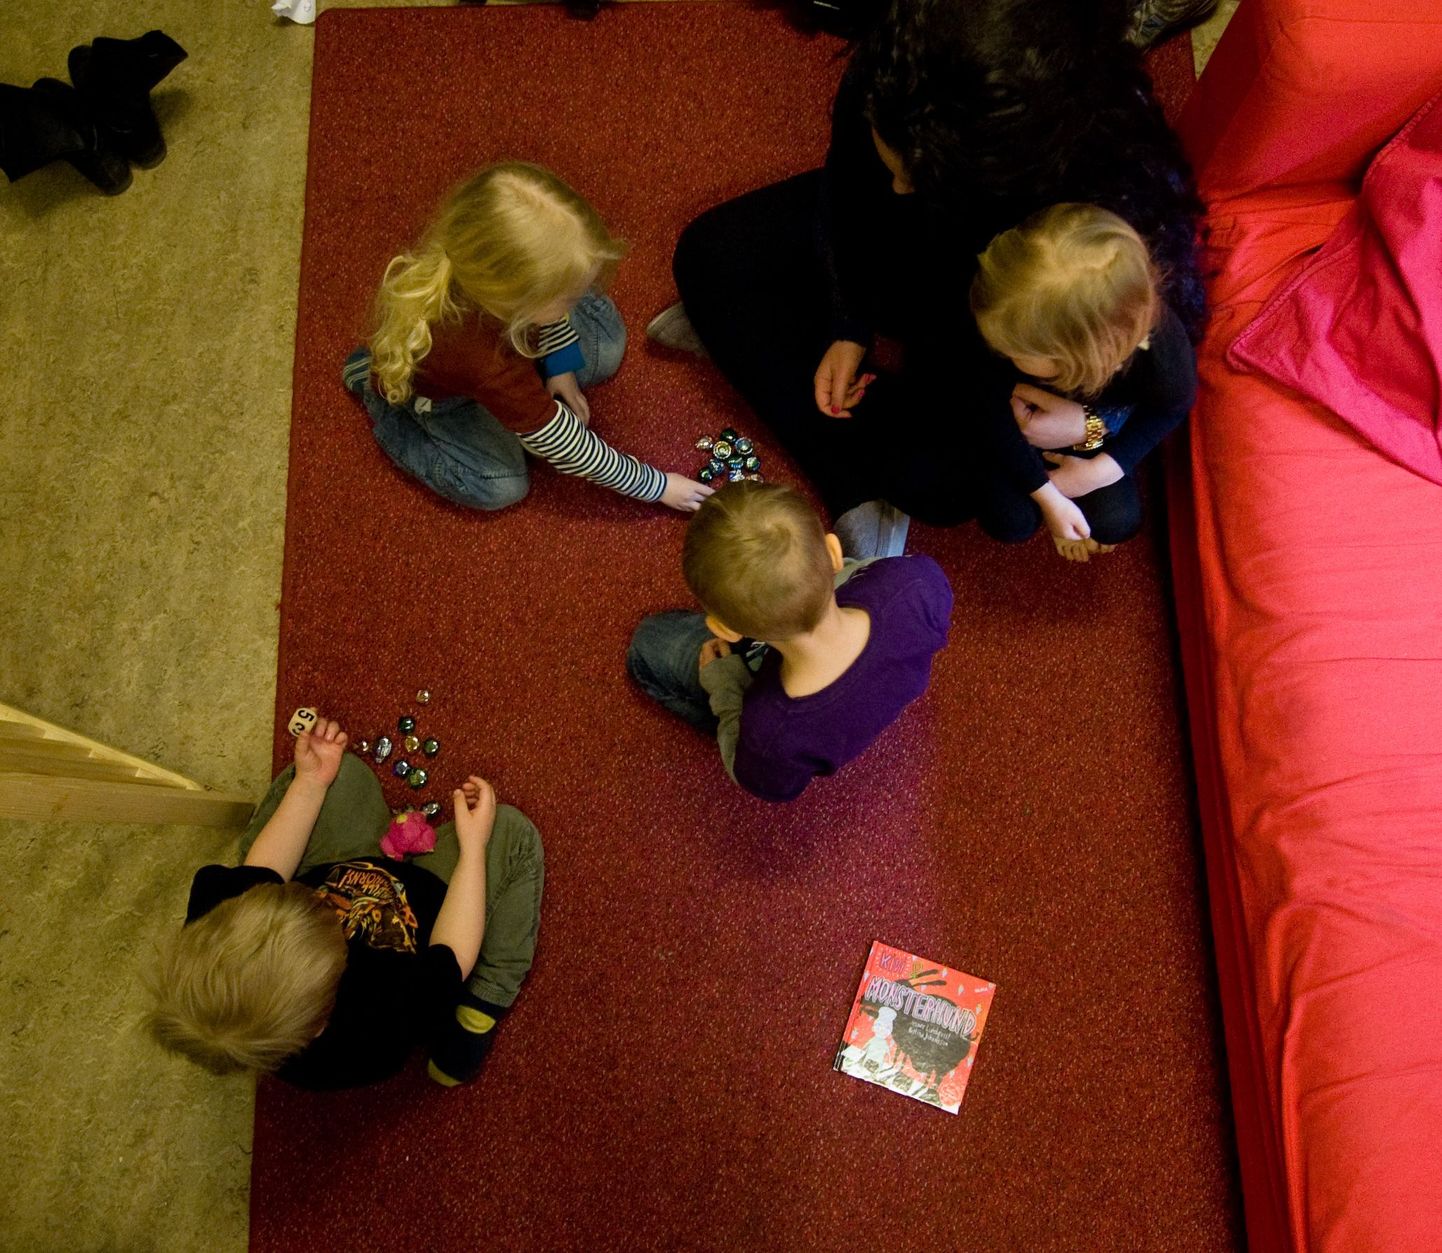 Nicolaigardens soo-neutraalne lasteaed Stockholmis. Põrandal on Jesper Lundqvisti sooneutraalne lasteraamat.